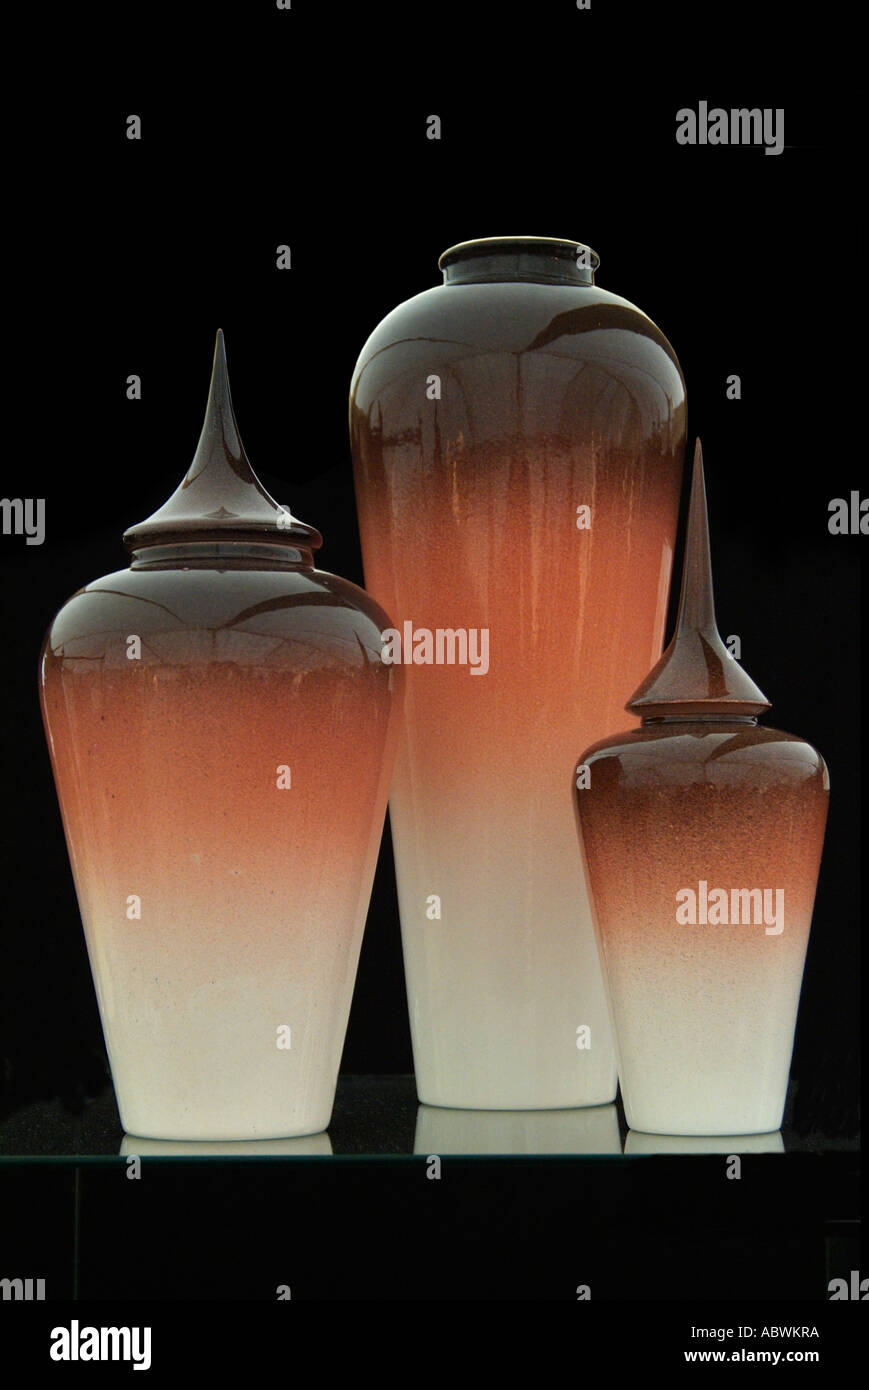 Bol vase pot ginger contiennent de collecte des contenants rond ovale brillant groupe orange brillant brun foncé reflètent l'échelle de portée de verre Banque D'Images